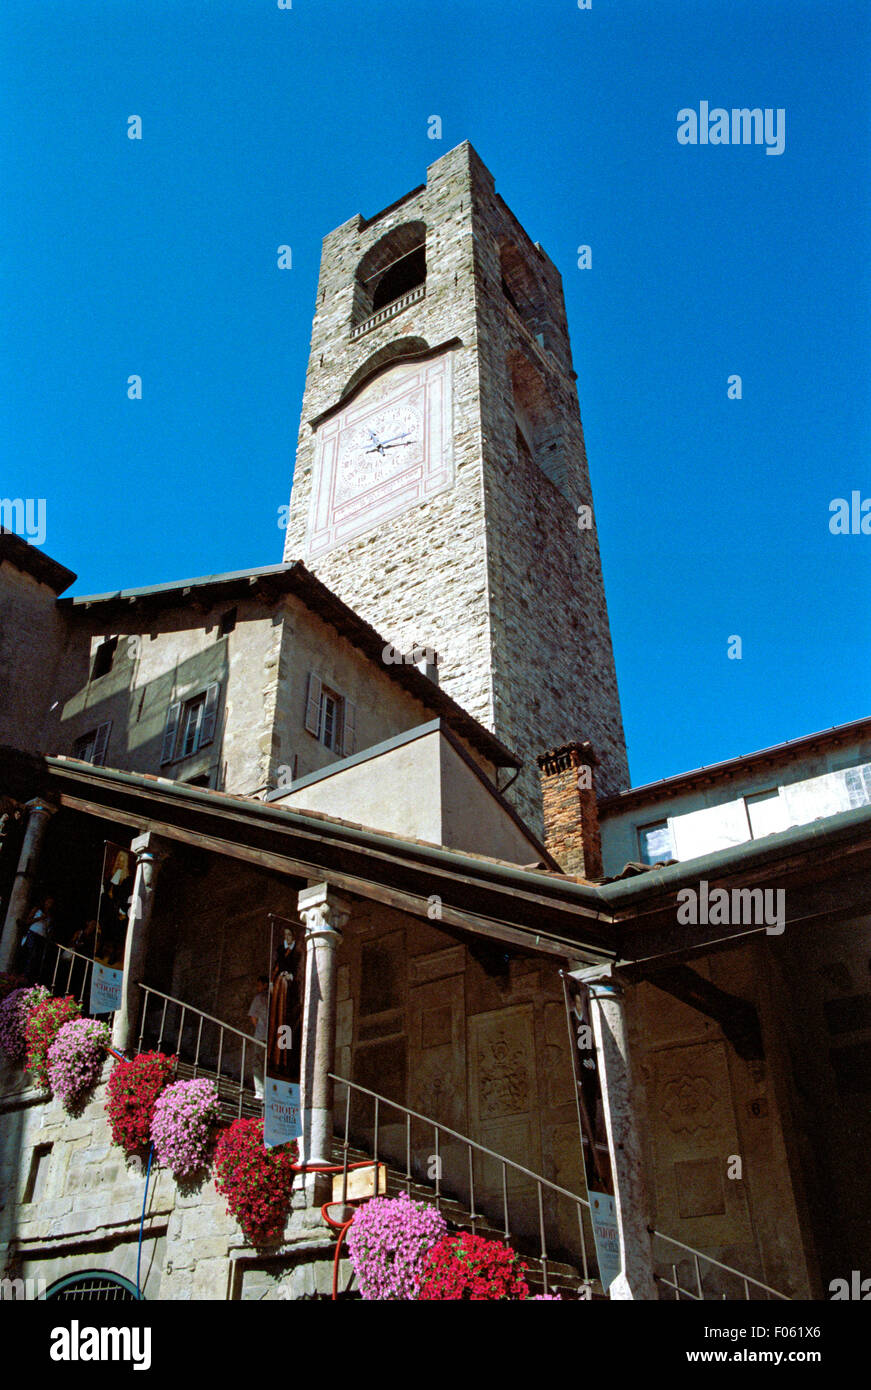 Italy, Lombardy, Bergamo Alta, Piazza Vecchia,  Palazzo del Podesta, Tower Stock Photo